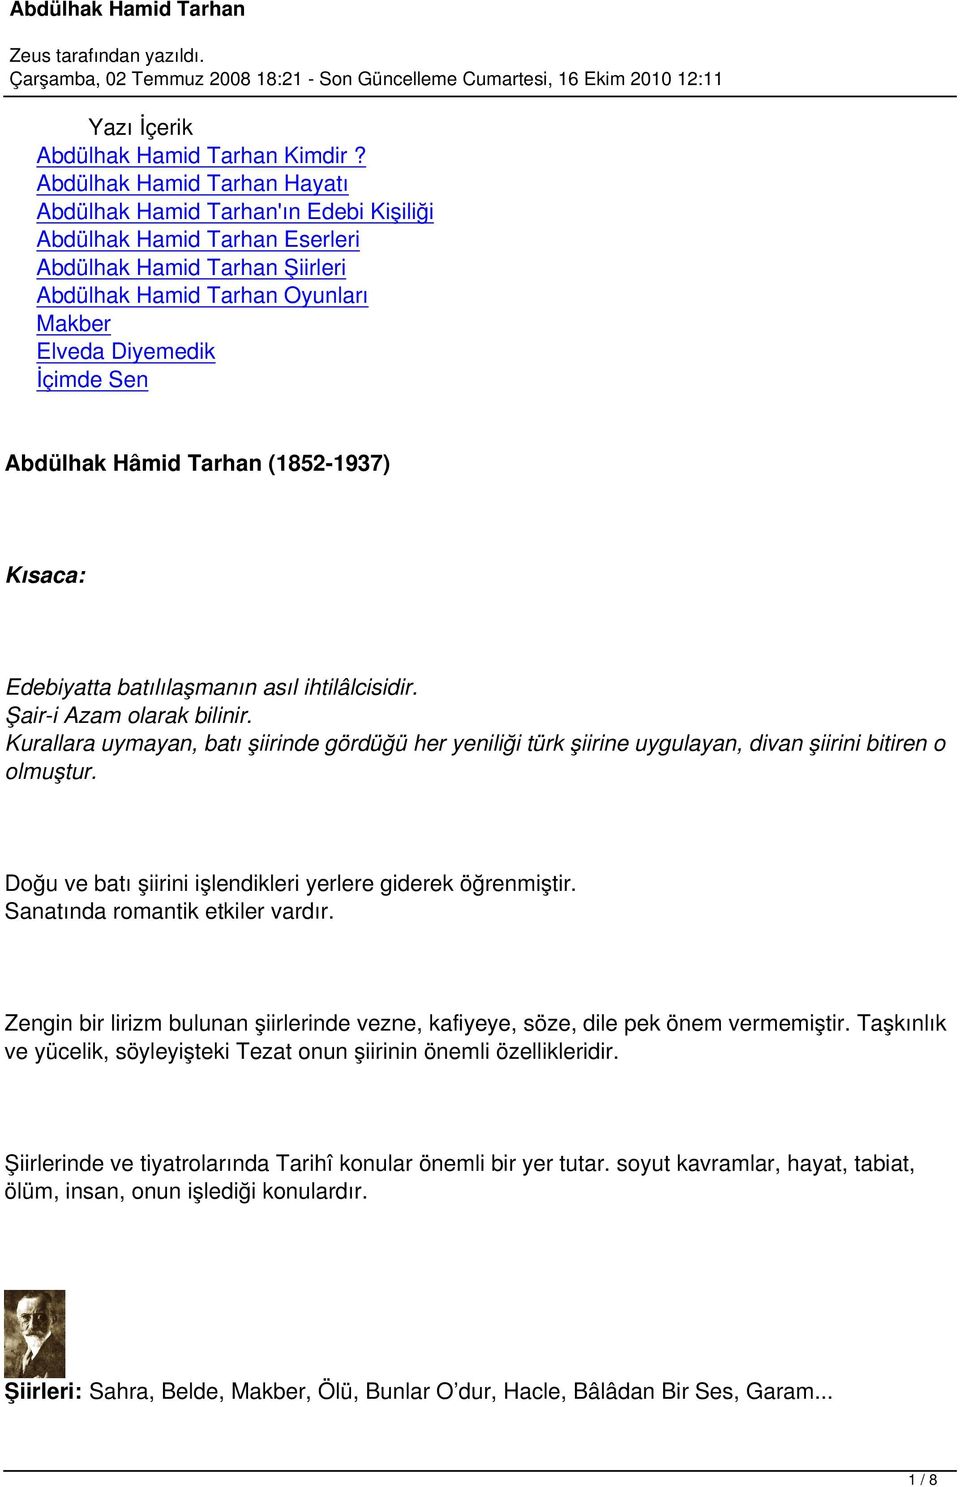 Abdülhak Hâmid Tarhan (1852-1937) Kısaca: Edebiyatta batılılaşmanın asıl ihtilâlcisidir. Şair-i Azam olarak bilinir.